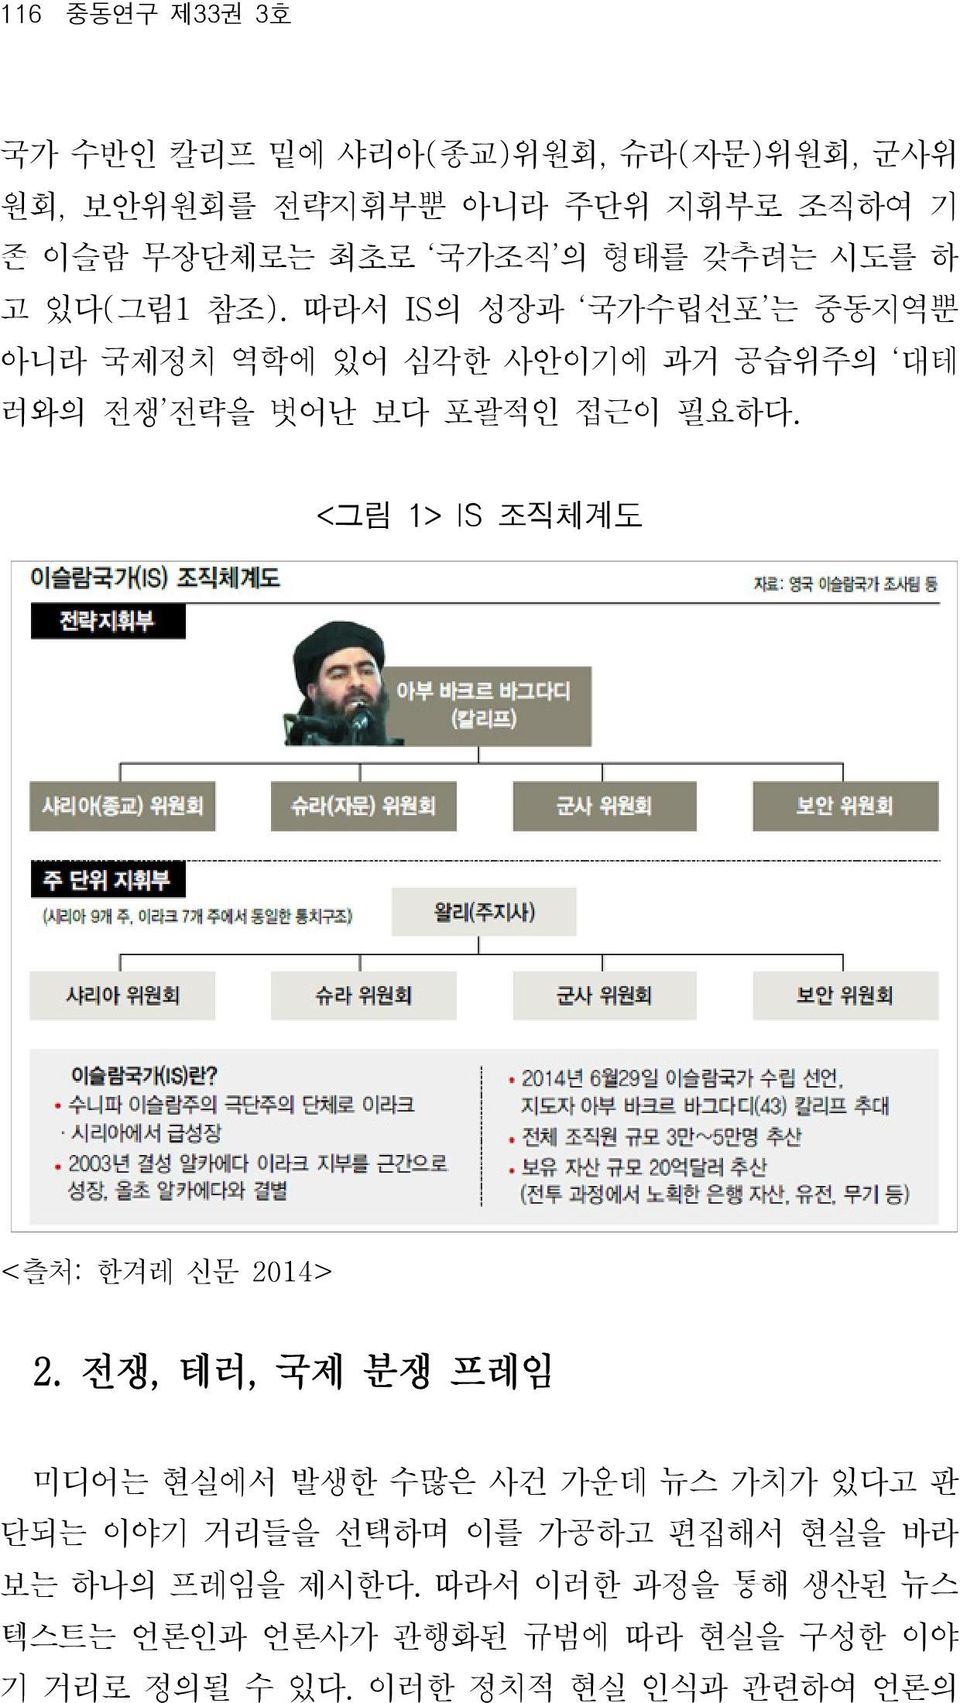 <그림 1> IS 조직체계도 <츨처: 한겨레 신문 2014> 2.